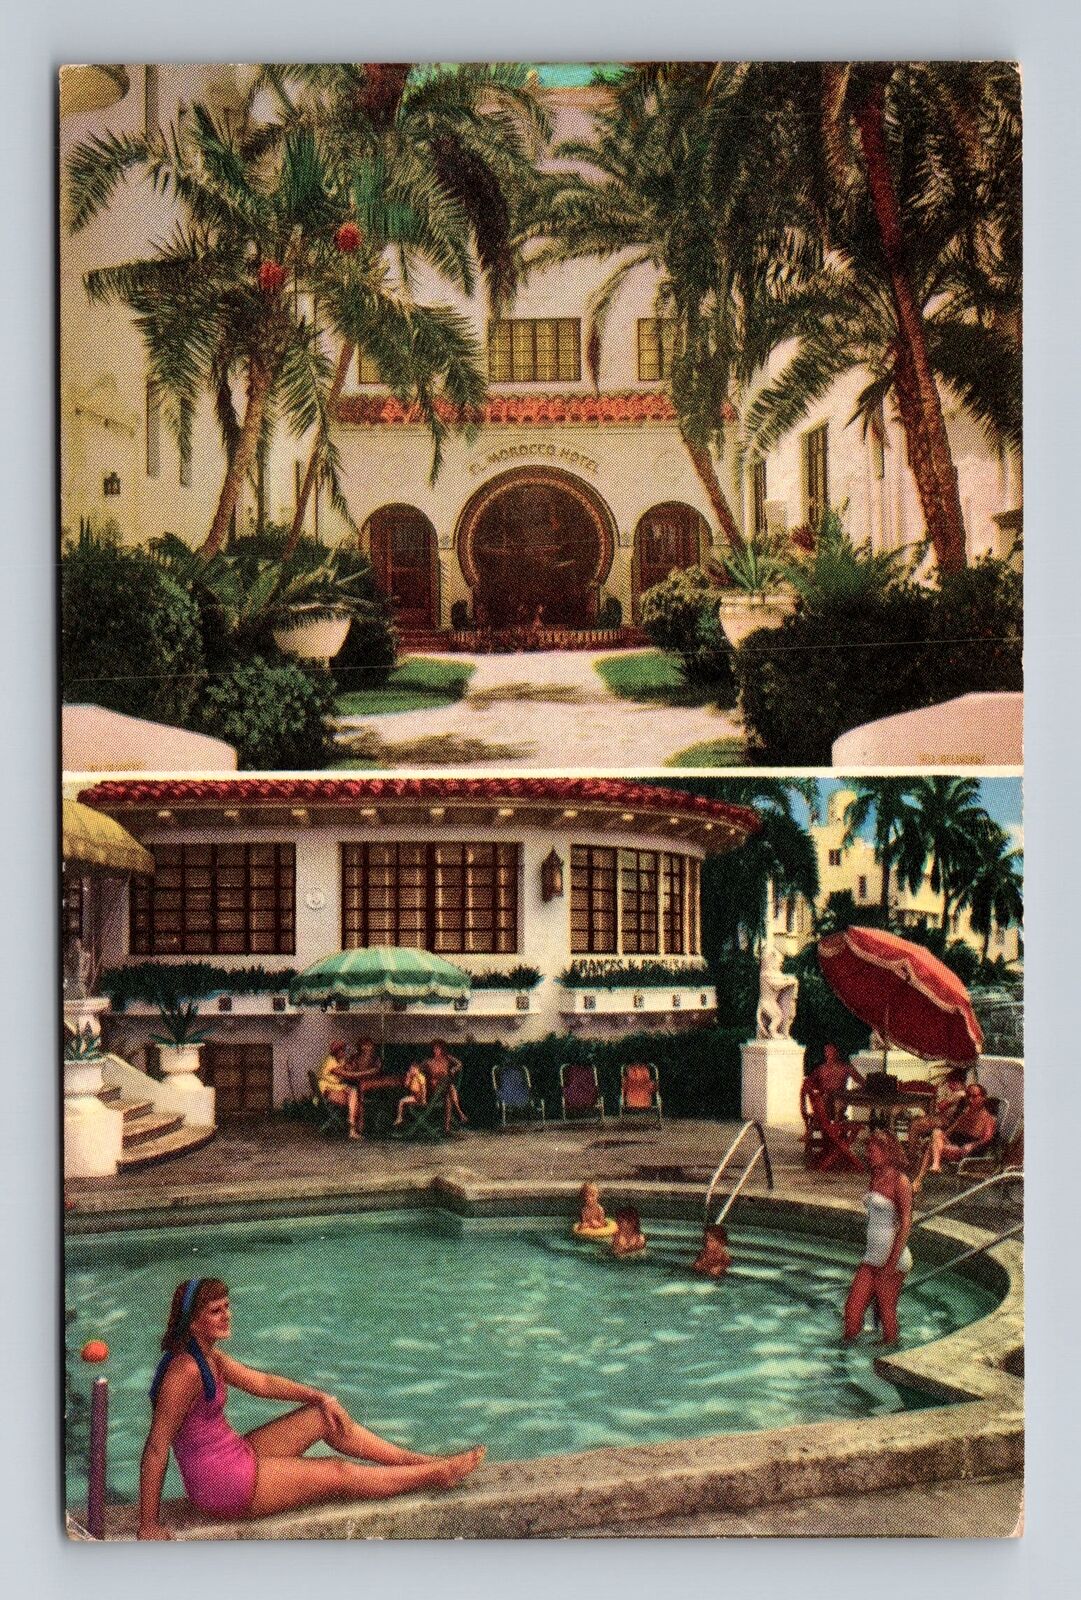 Miami Beach FL- Florida, Snowplace Of Miami Beach, Vintage c1951 Postcard